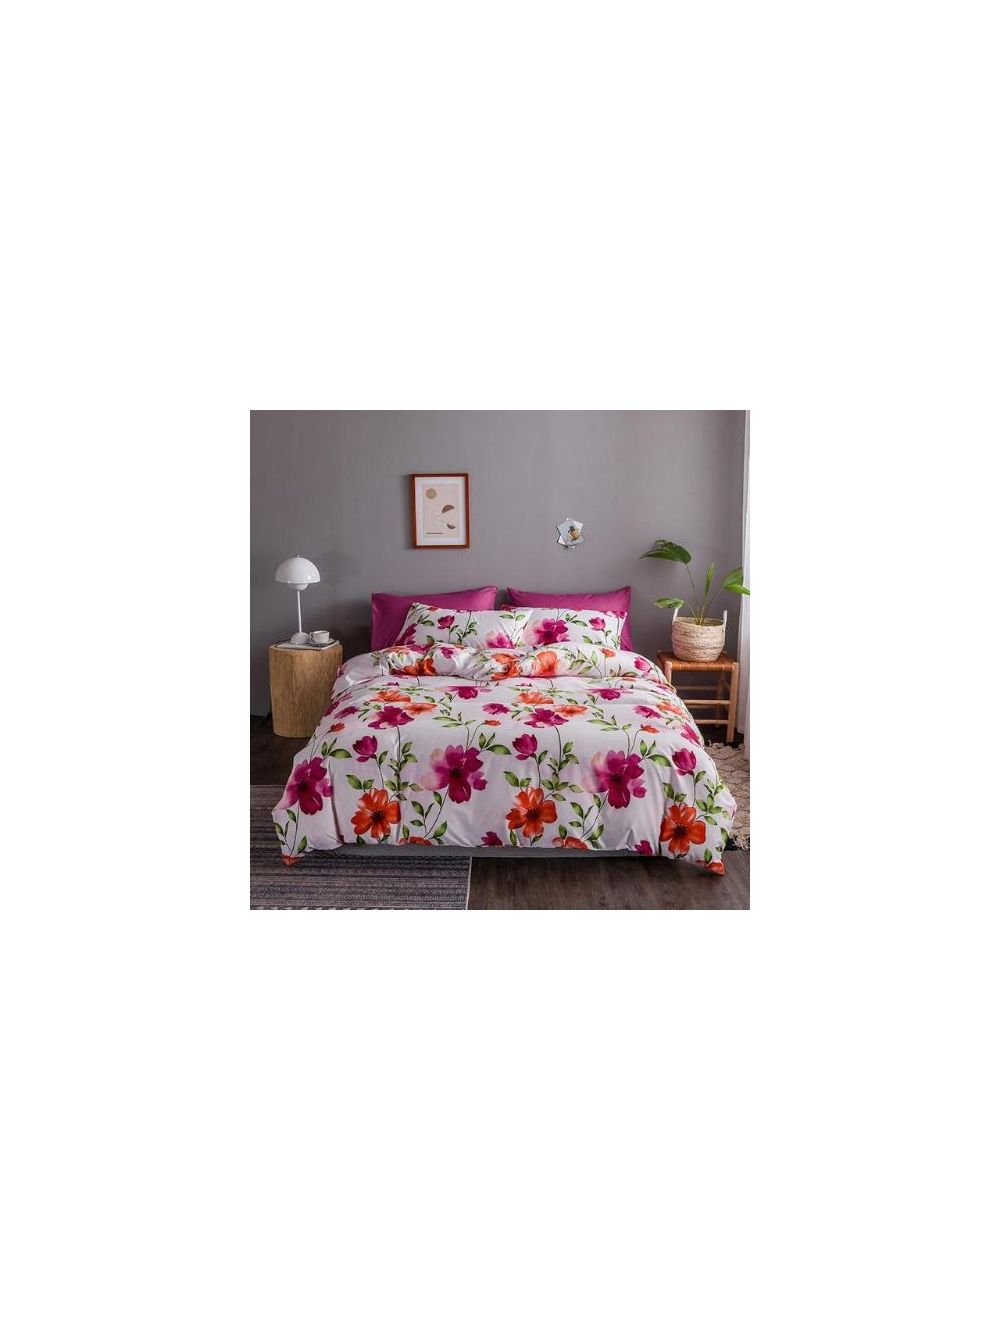 DEALS FOR LESS - Queen/double Size, Duvet Cover, Bedding Set Of 6 Pieces, Floral Design, 1 Duvet Cover + 1 Bedsheet + 4 Pillow Covers.-hz25-34d/q